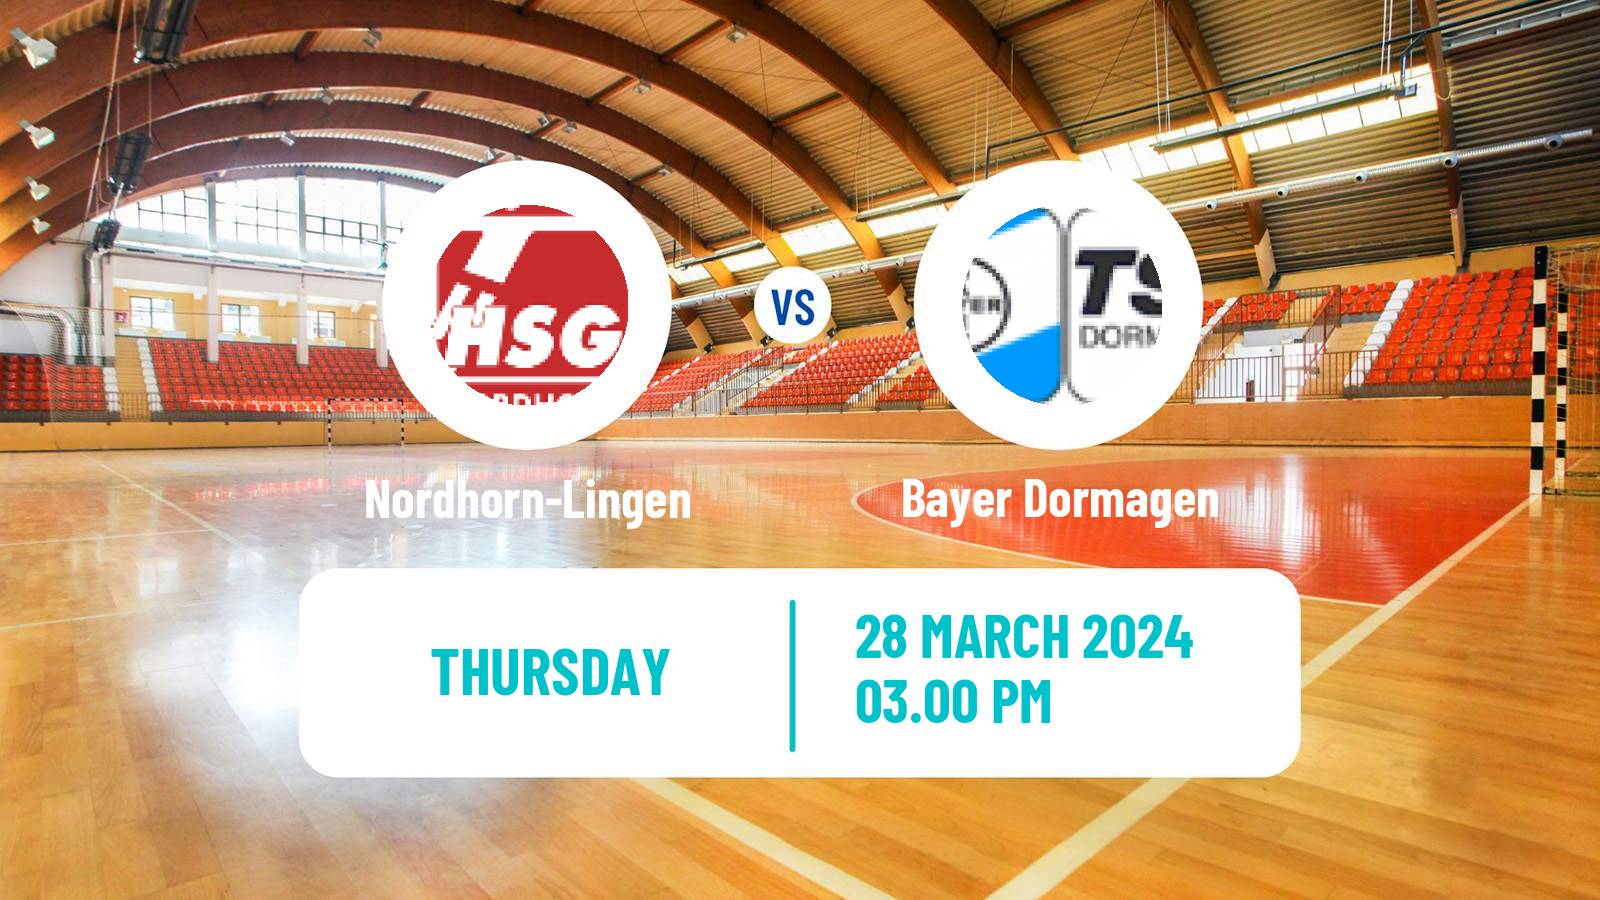 Handball German 2 Bundesliga Handball Nordhorn-Lingen - Bayer Dormagen